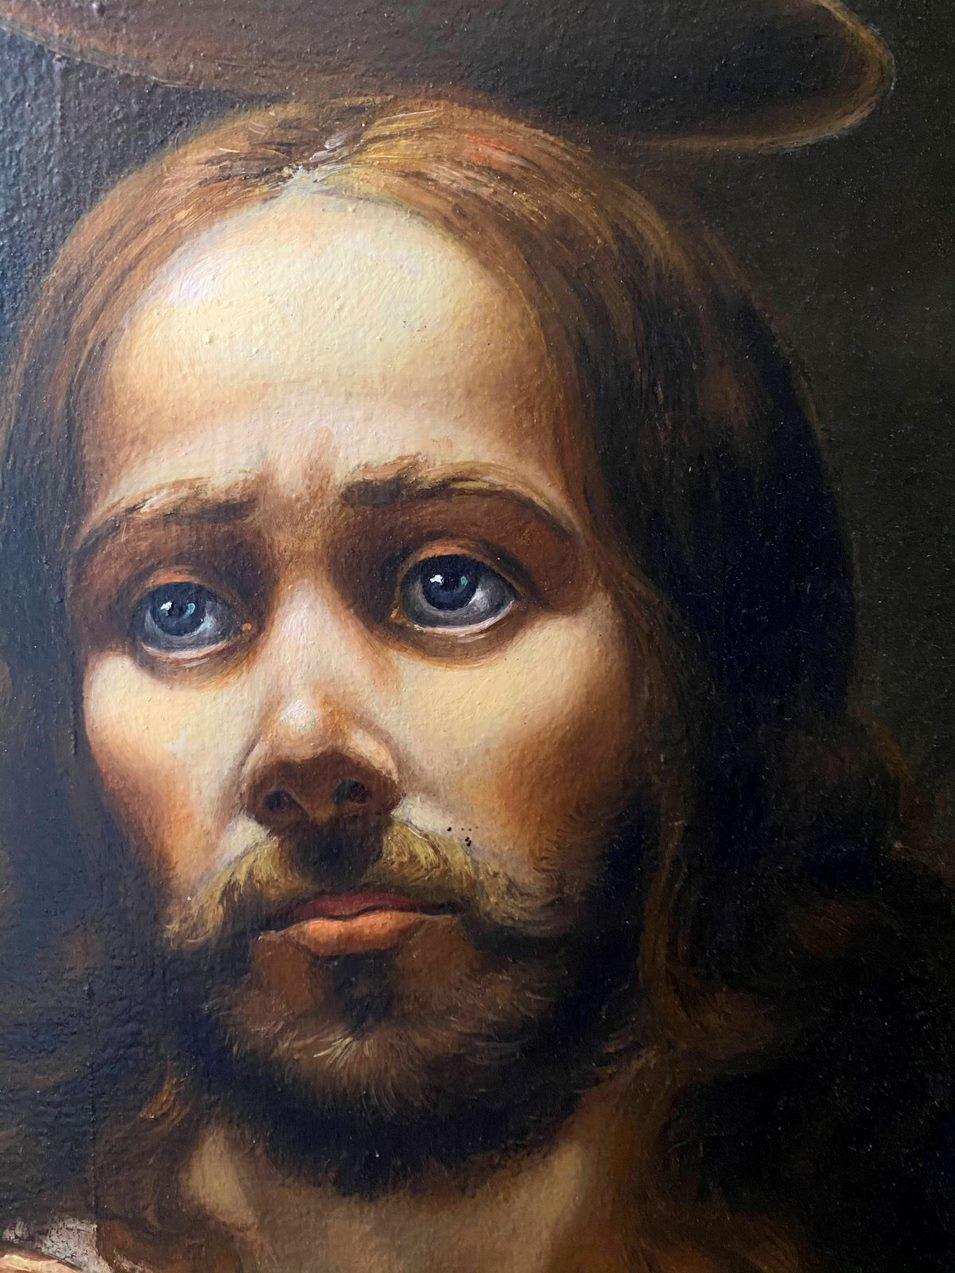 original painting of jesus christ